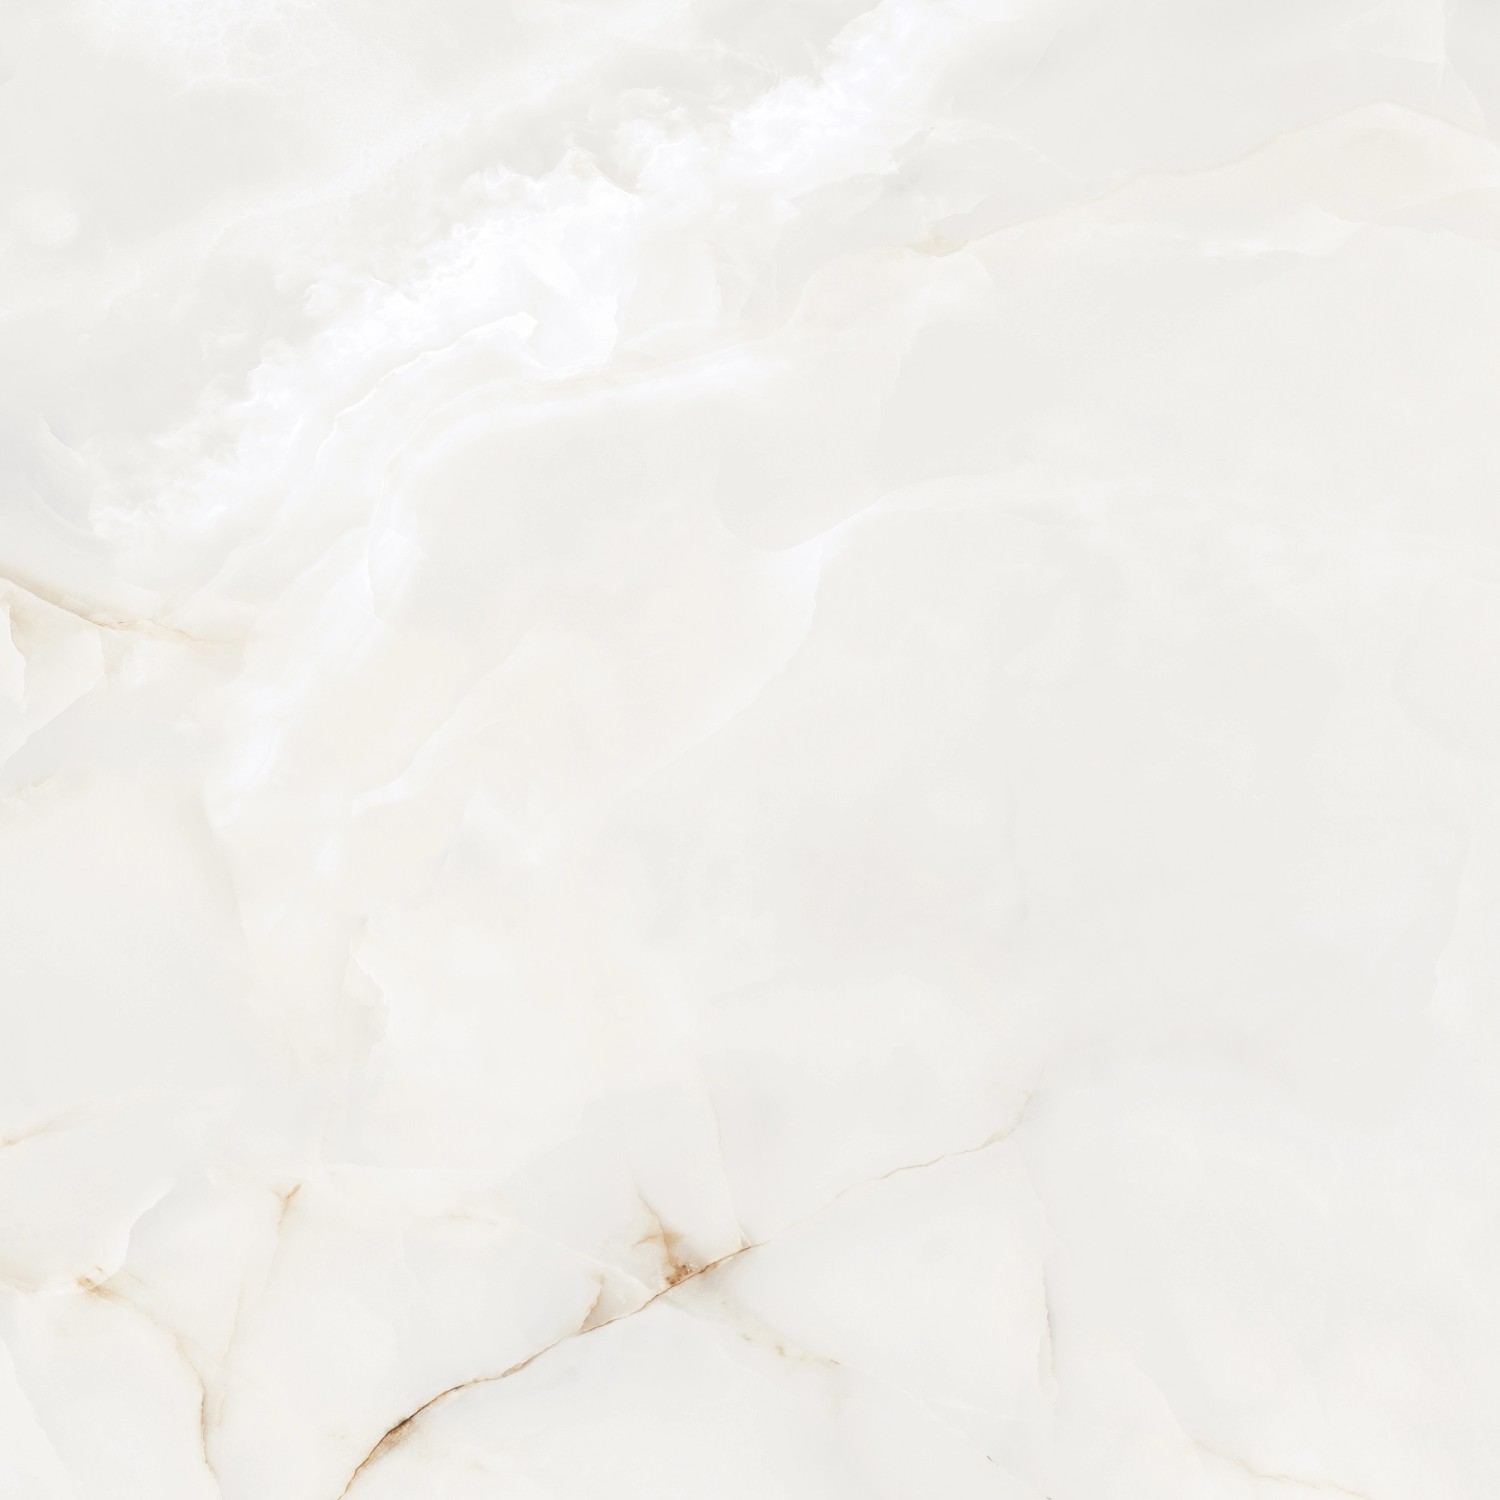 Feinsteinzug Bianco Christal 120 cm x 120 cm glasiert poliert rektifiziert